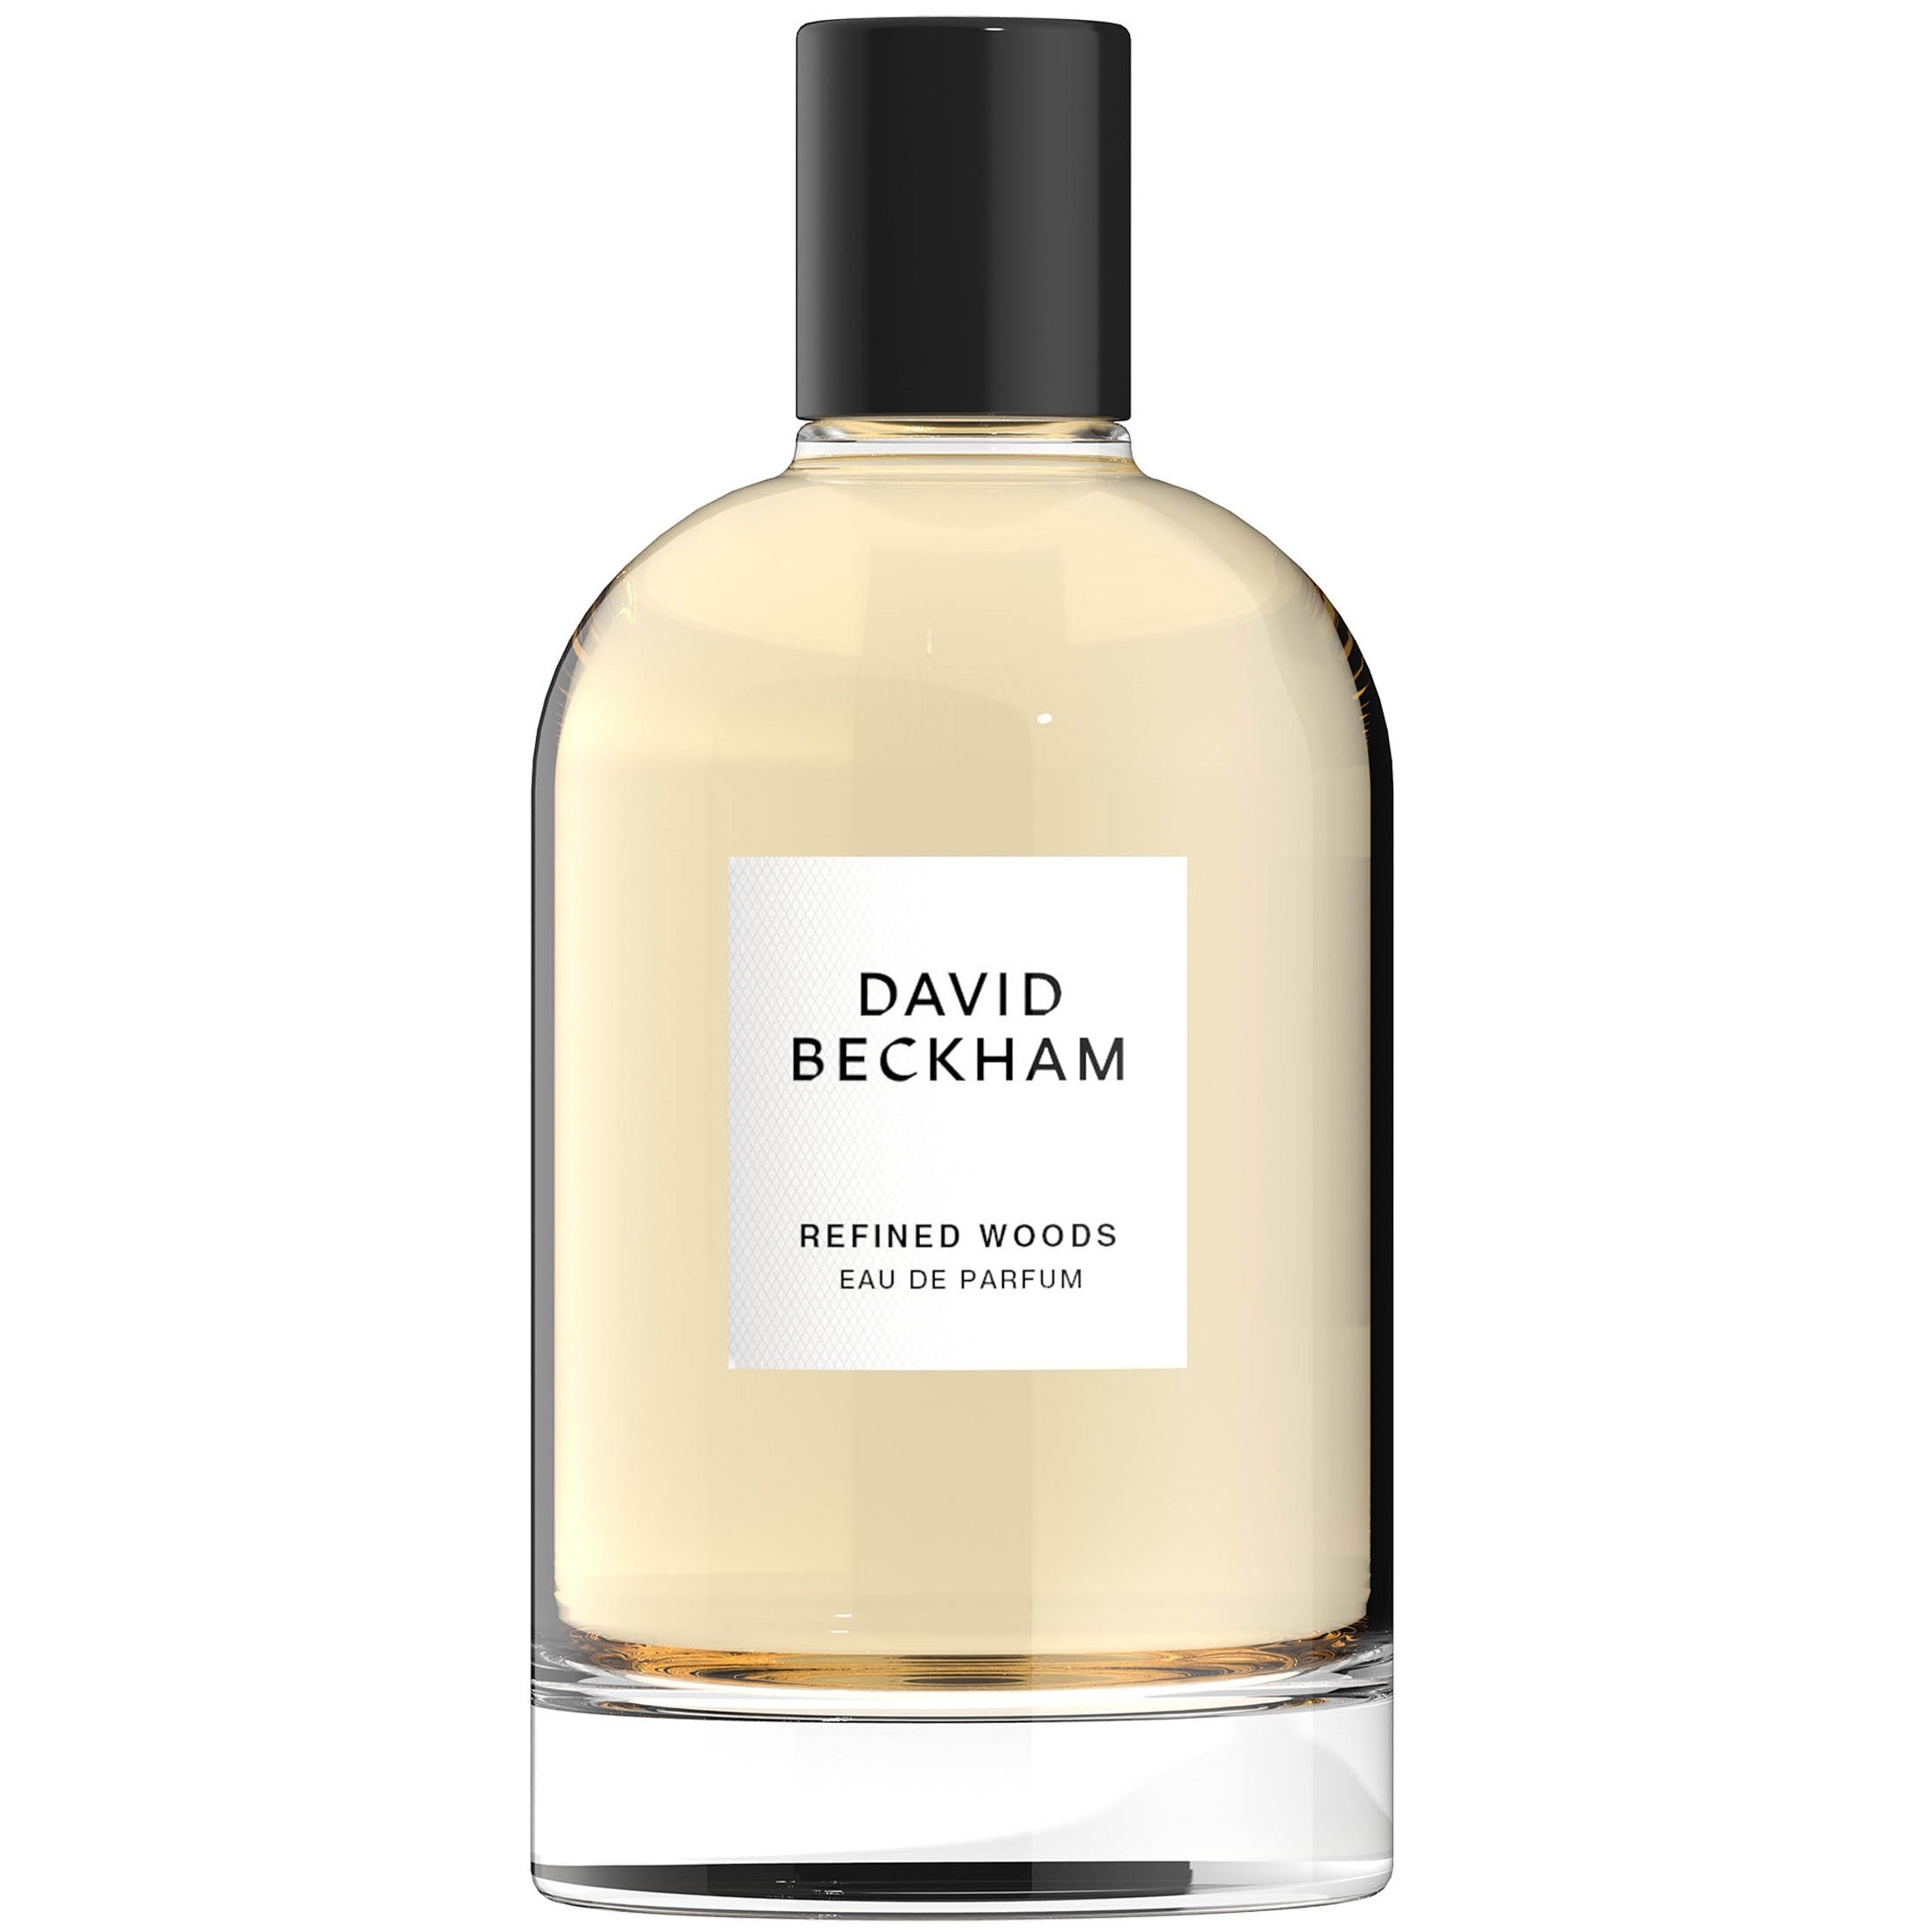 David Beckham Refined Woods Eau de Parfum 100 ml